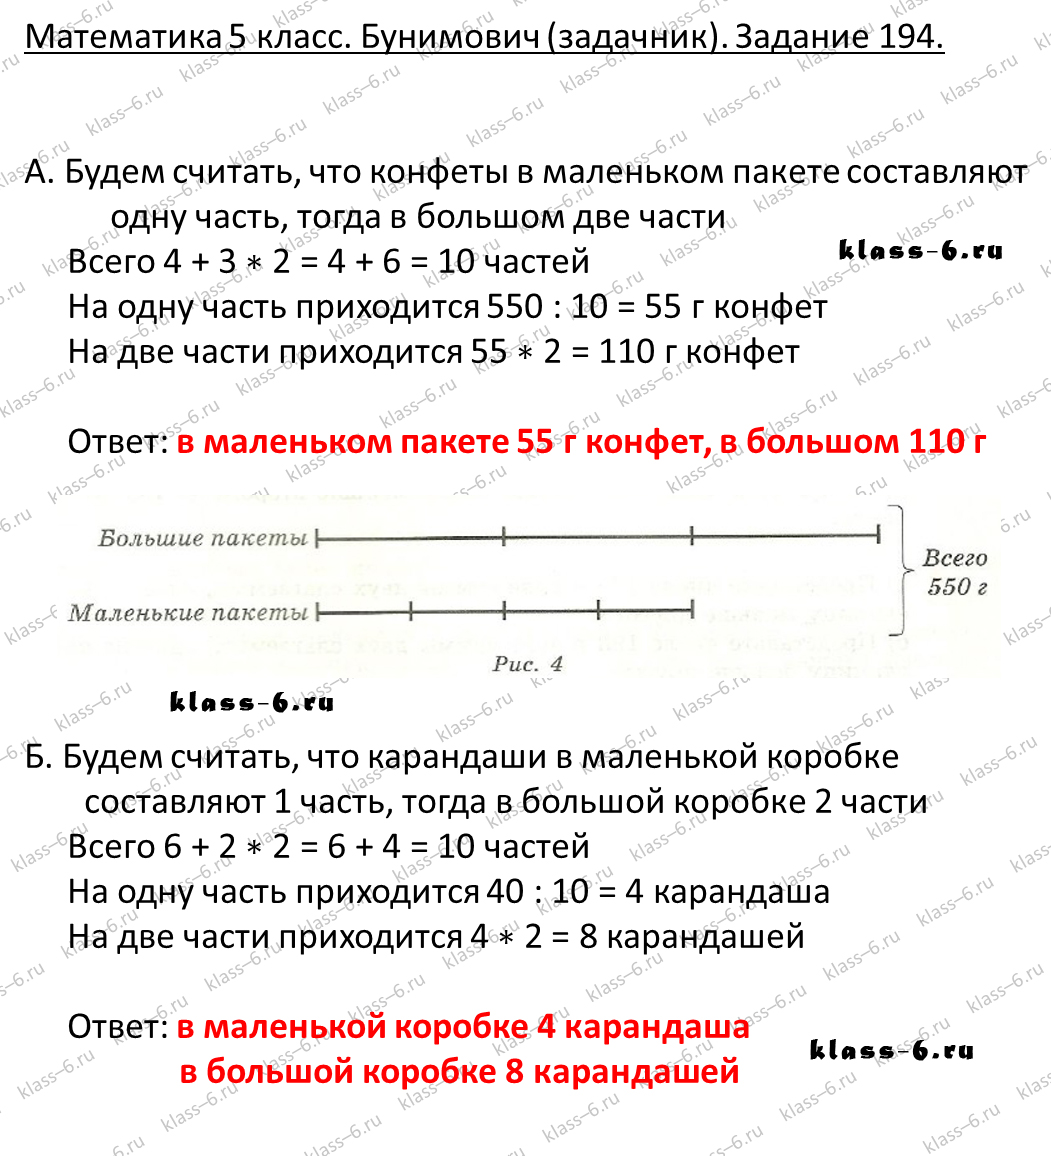 решебник и гдз по математике задачник Бунимович 5 класс задача 194